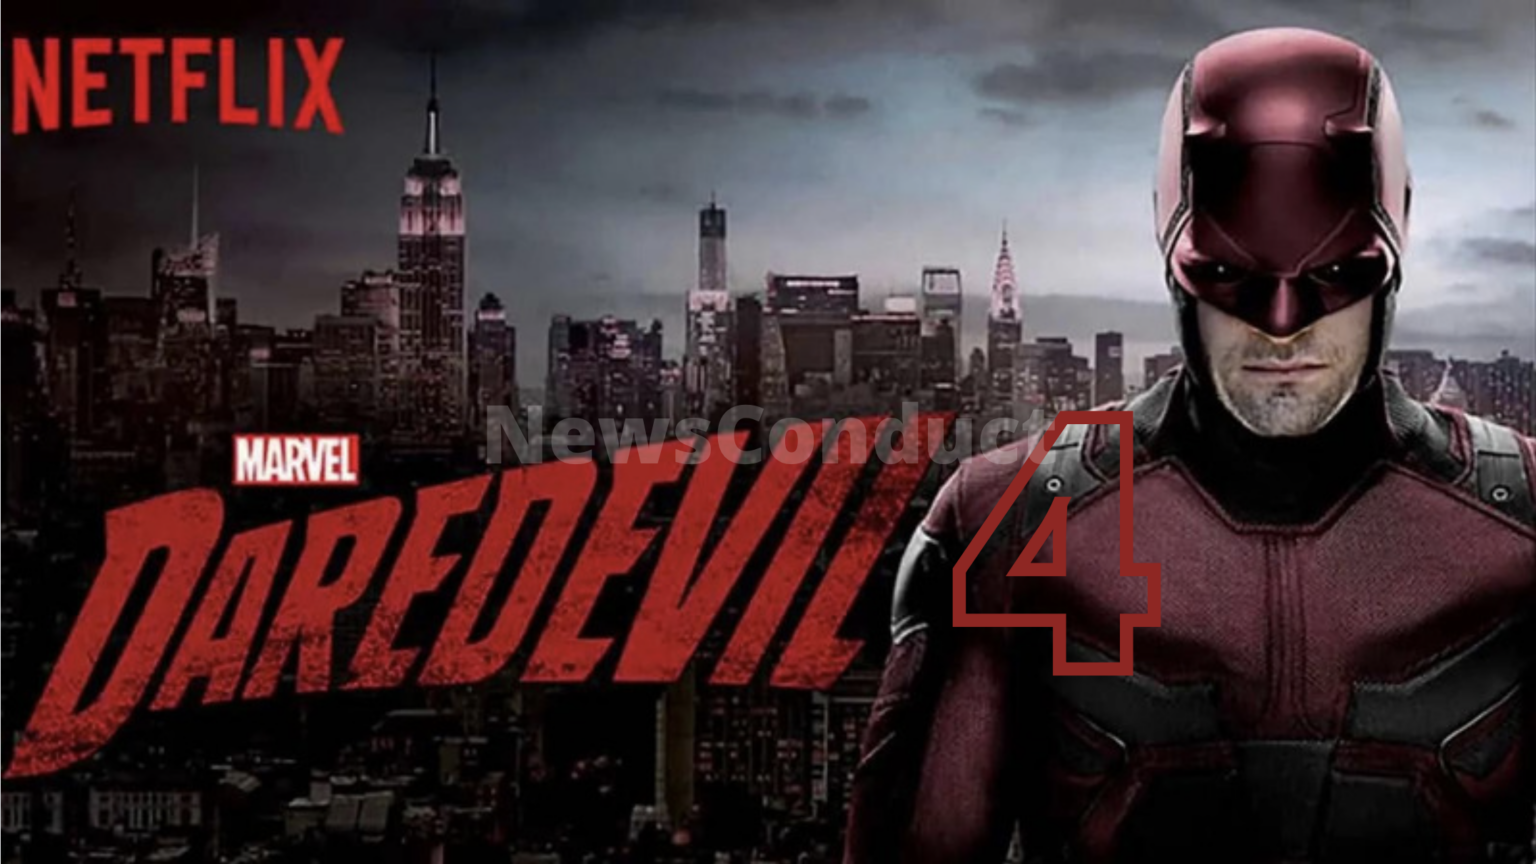 Daredevil season 4